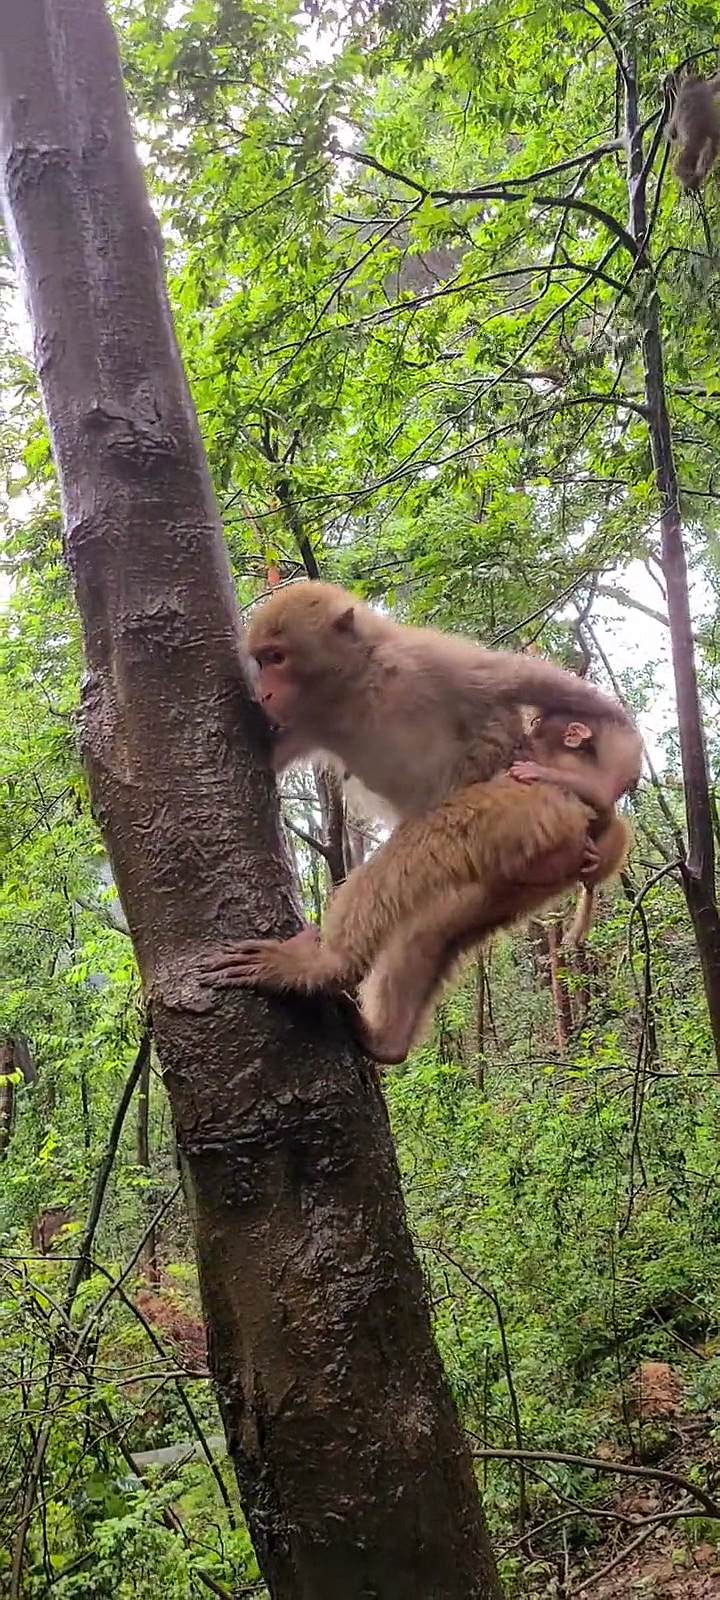 猴妈妈背着宝宝爬树,好像有点滑啊